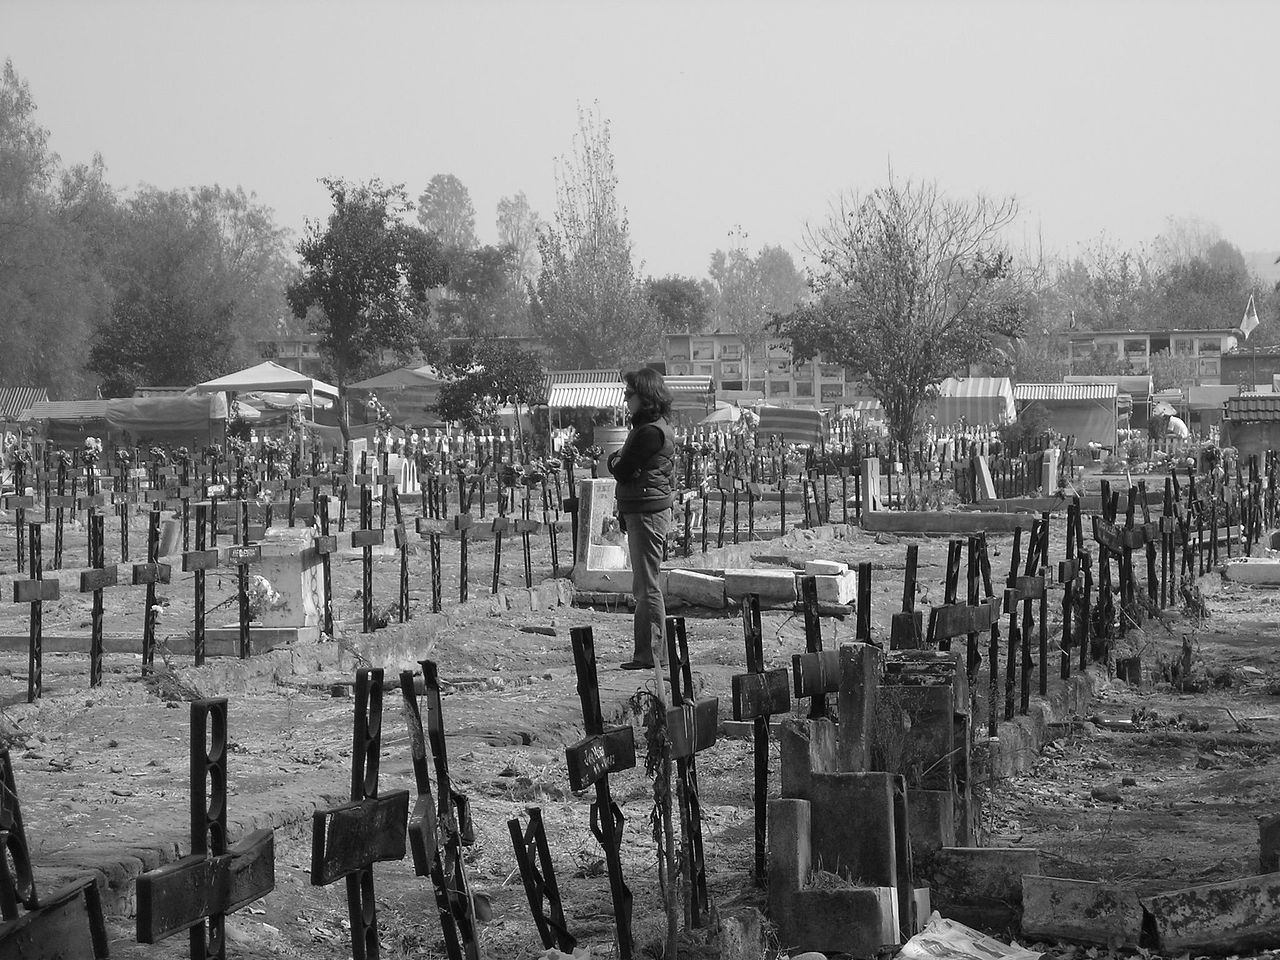 Imagen de una persona parada en un cementerio: Hay varias cruces de aspecto descuidado marcando el lugar de las tumbas